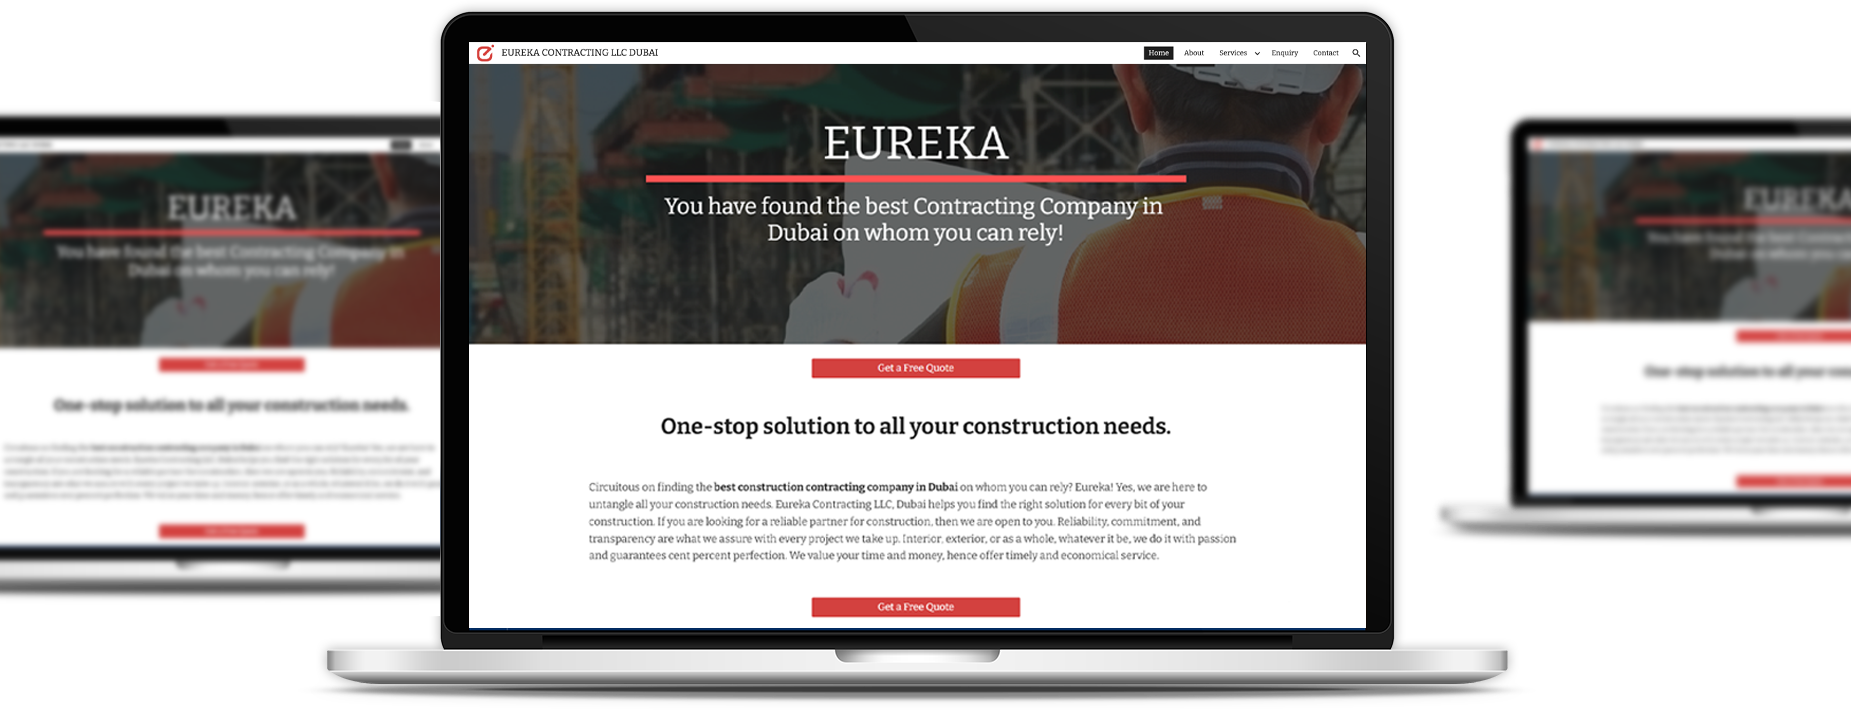 eureka contracting desktop